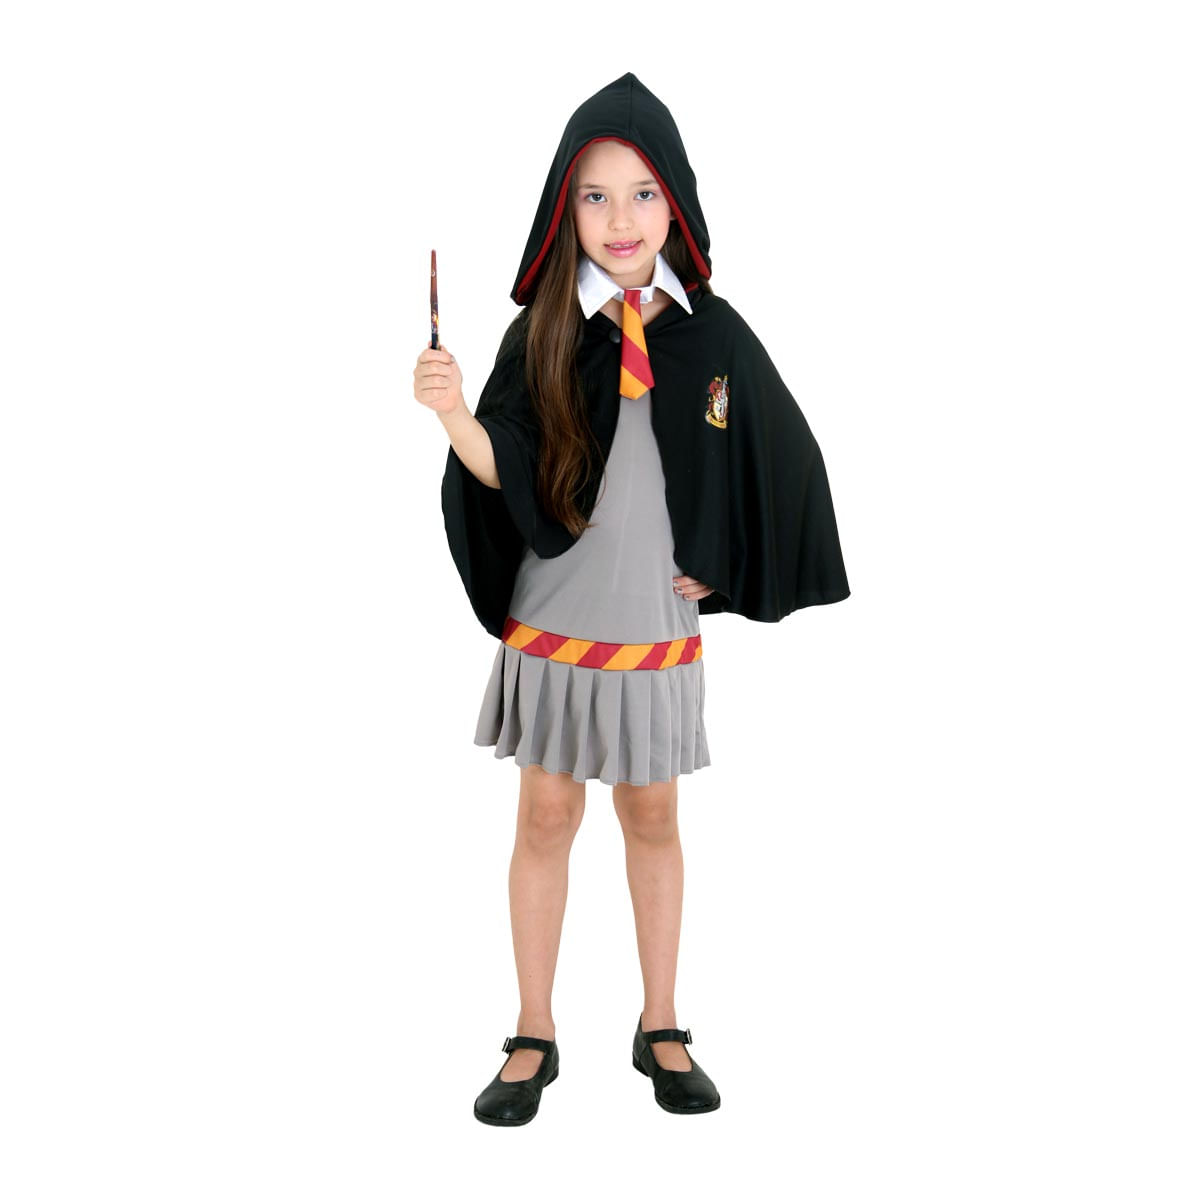 Fantasia Hermione Grifinória Infantil - Harry Potter P / UNICA